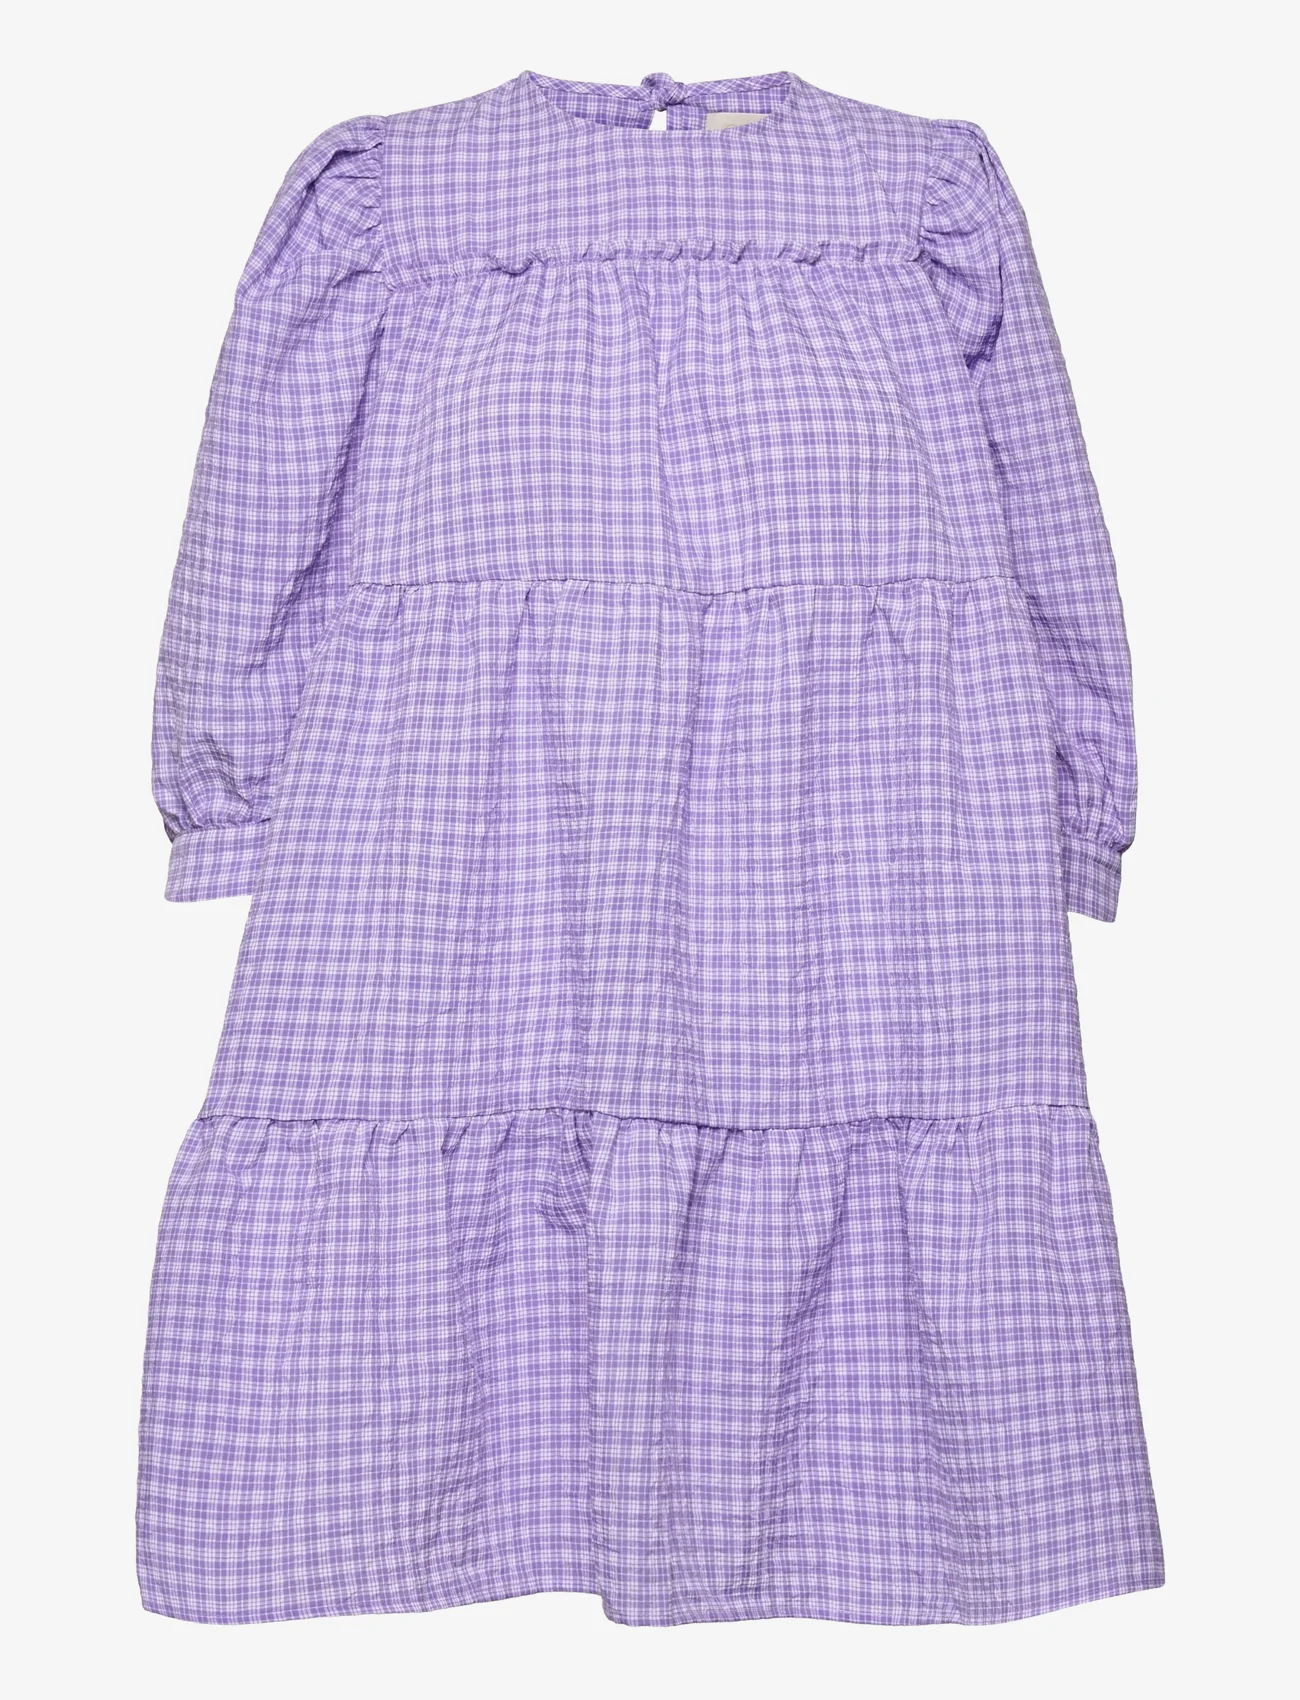 Minus - Rowen kjole - korta klänningar - purple checked - 0